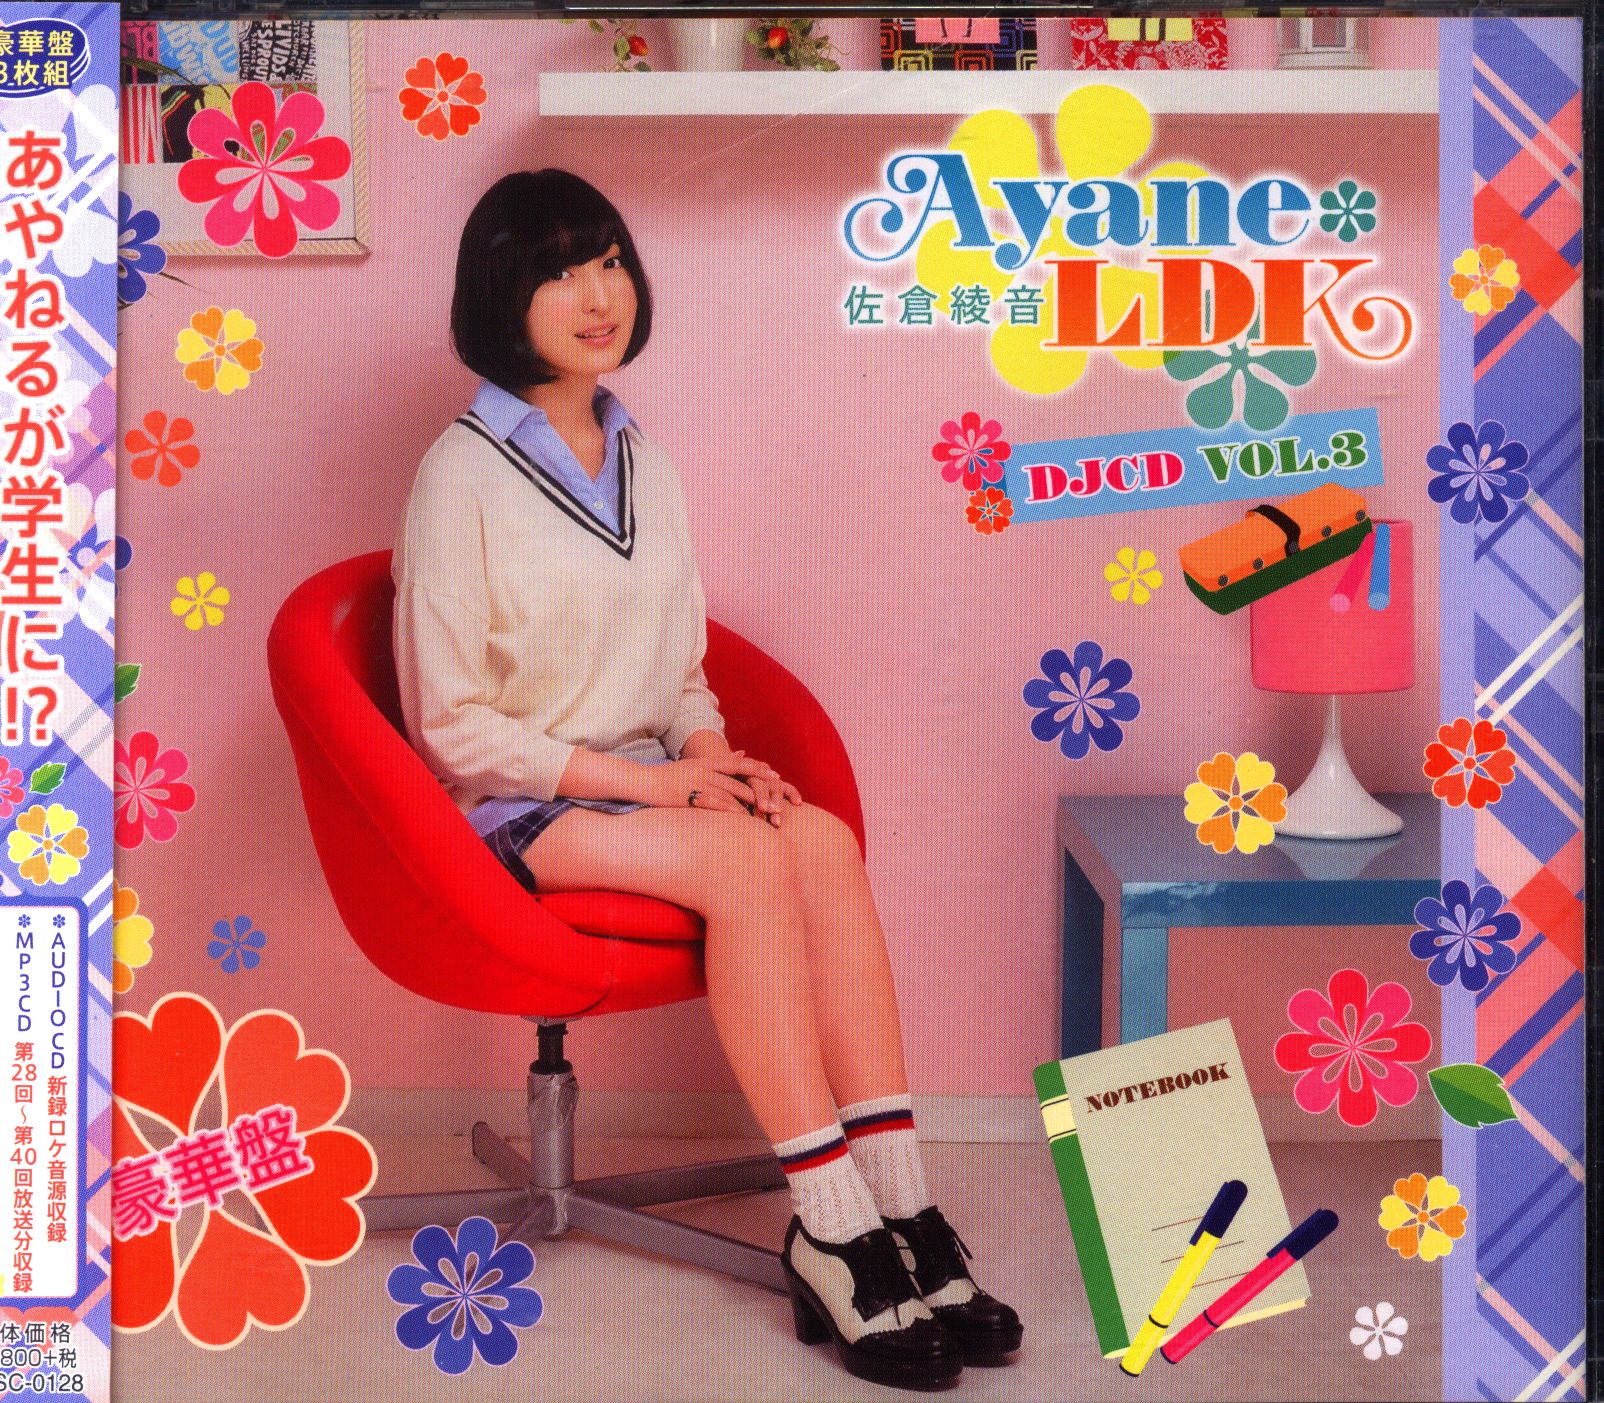 Ayane*LDK DJCD Vol.1〜3  豪華盤(DVD付)［CD］個人保有のCDです